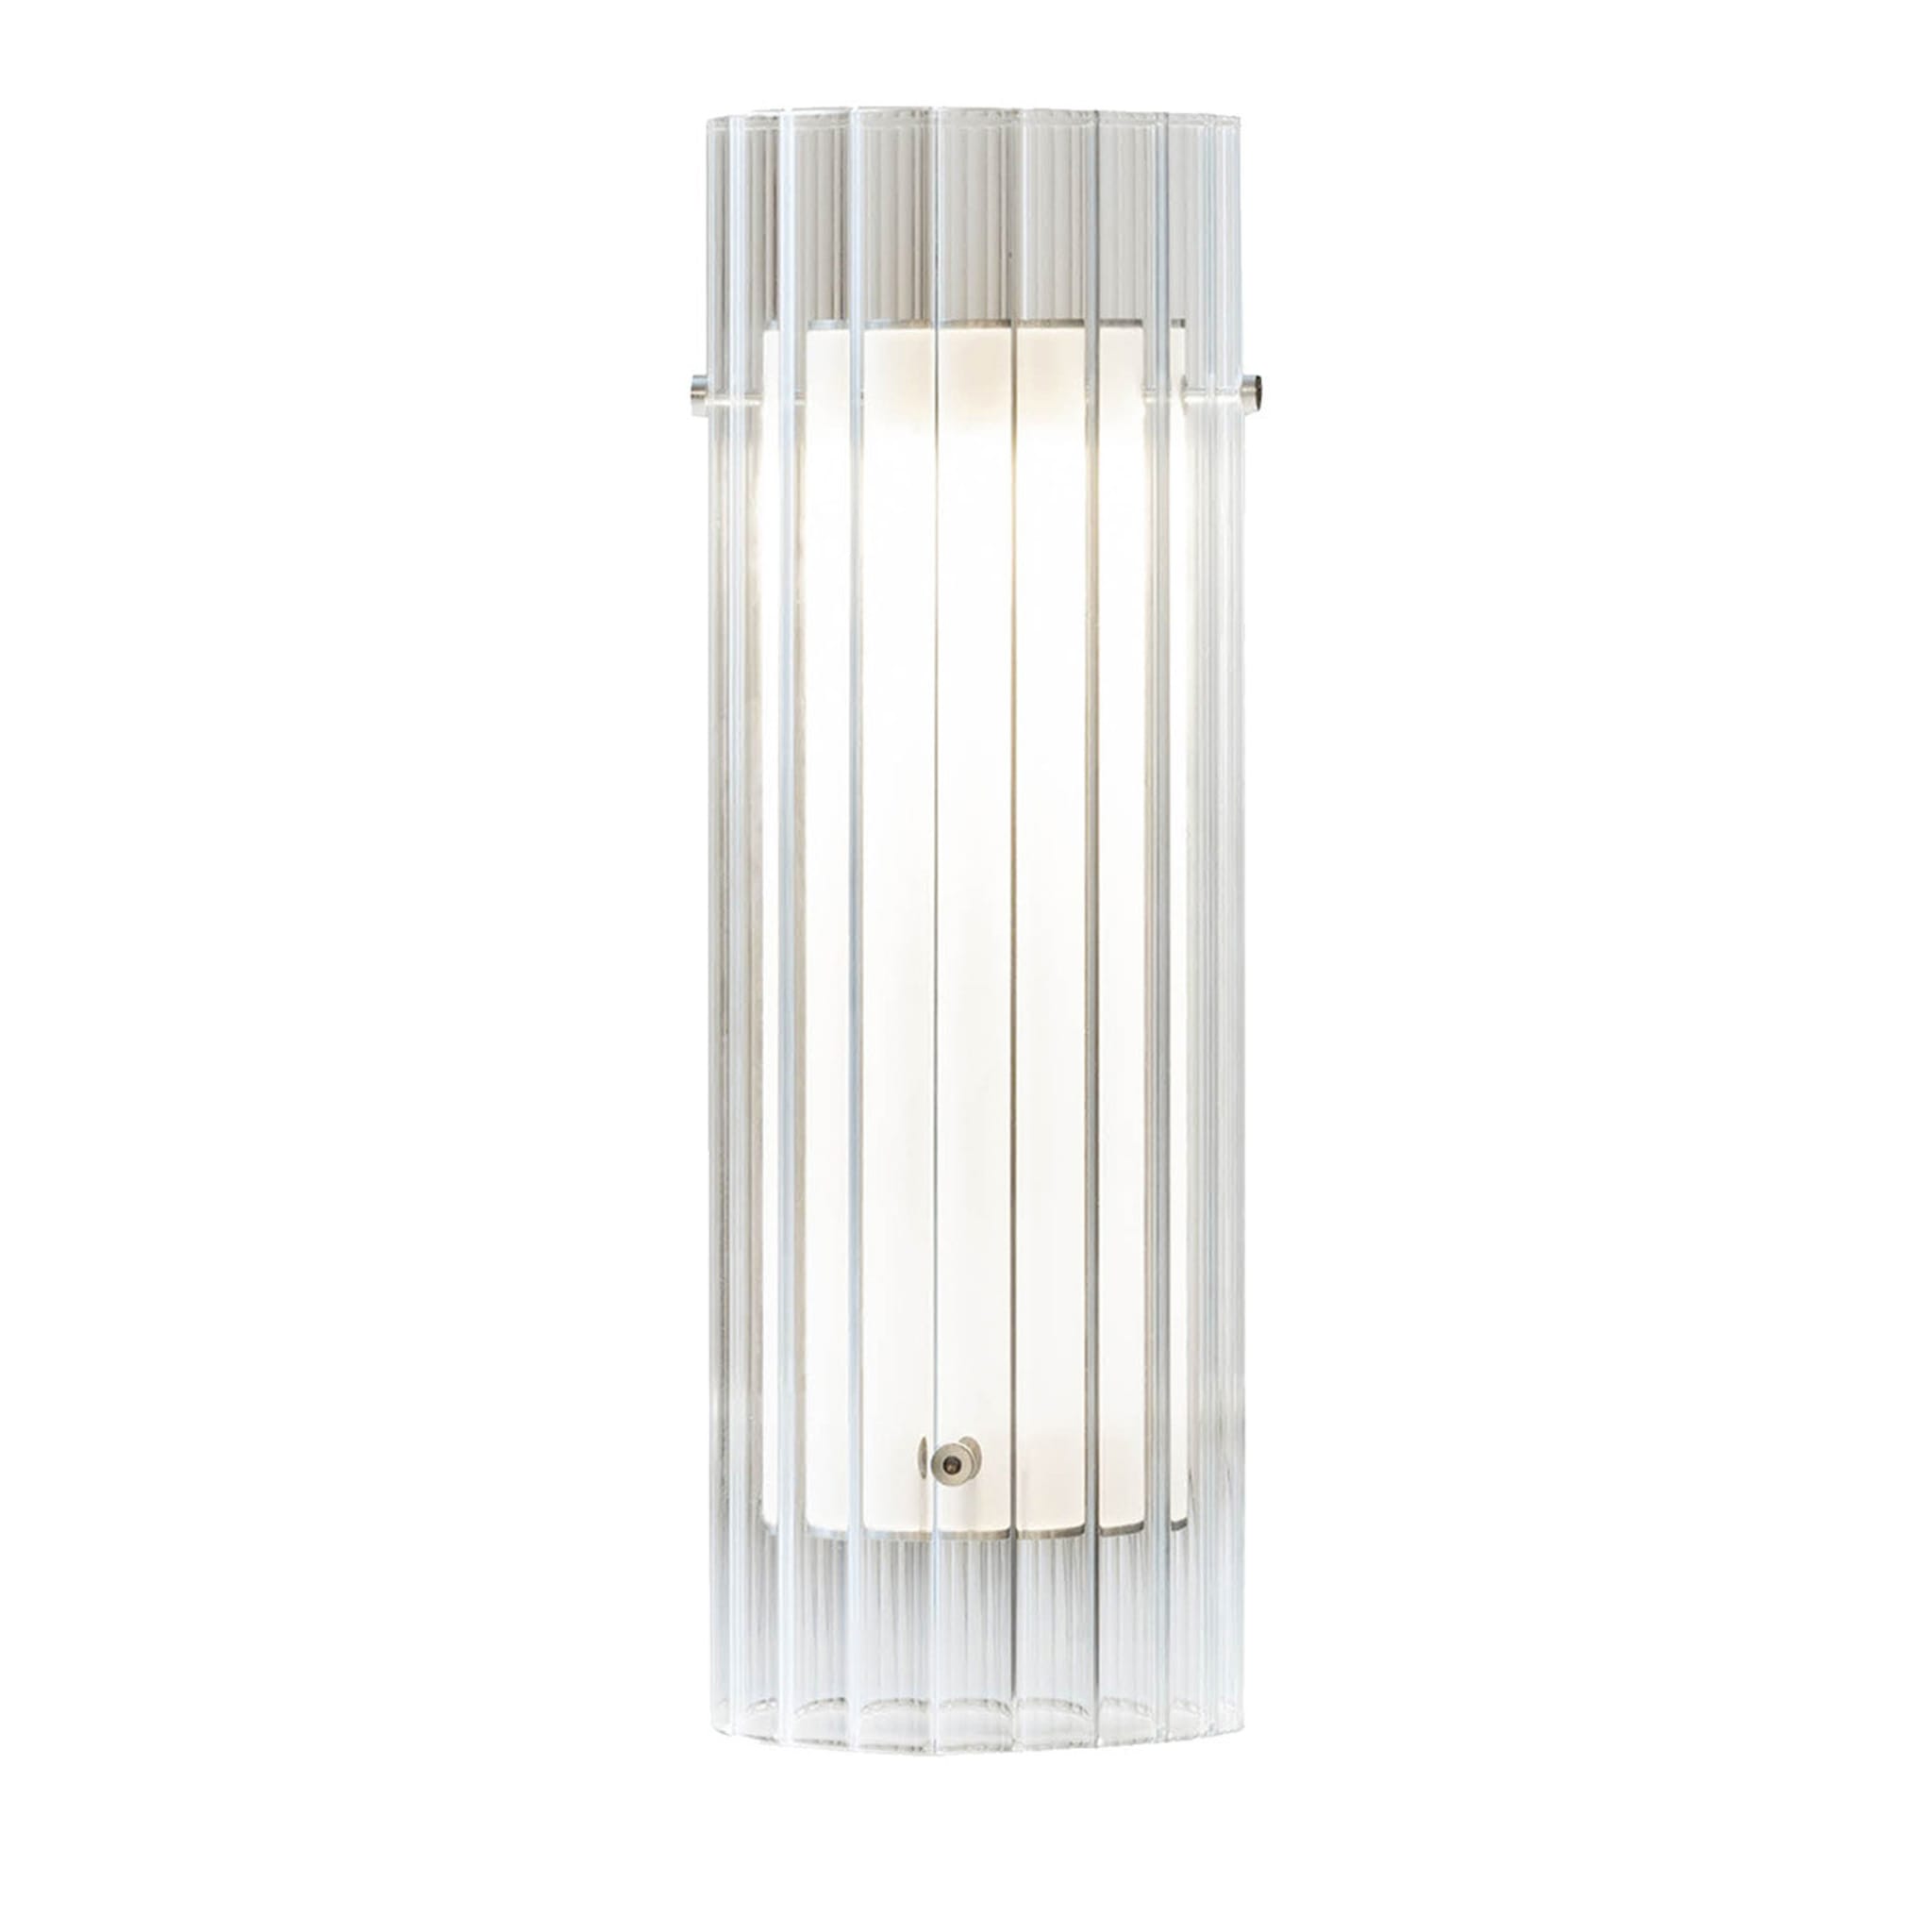 La Sospesa Table Lamp by Stefano Boeri Architetti - Main view